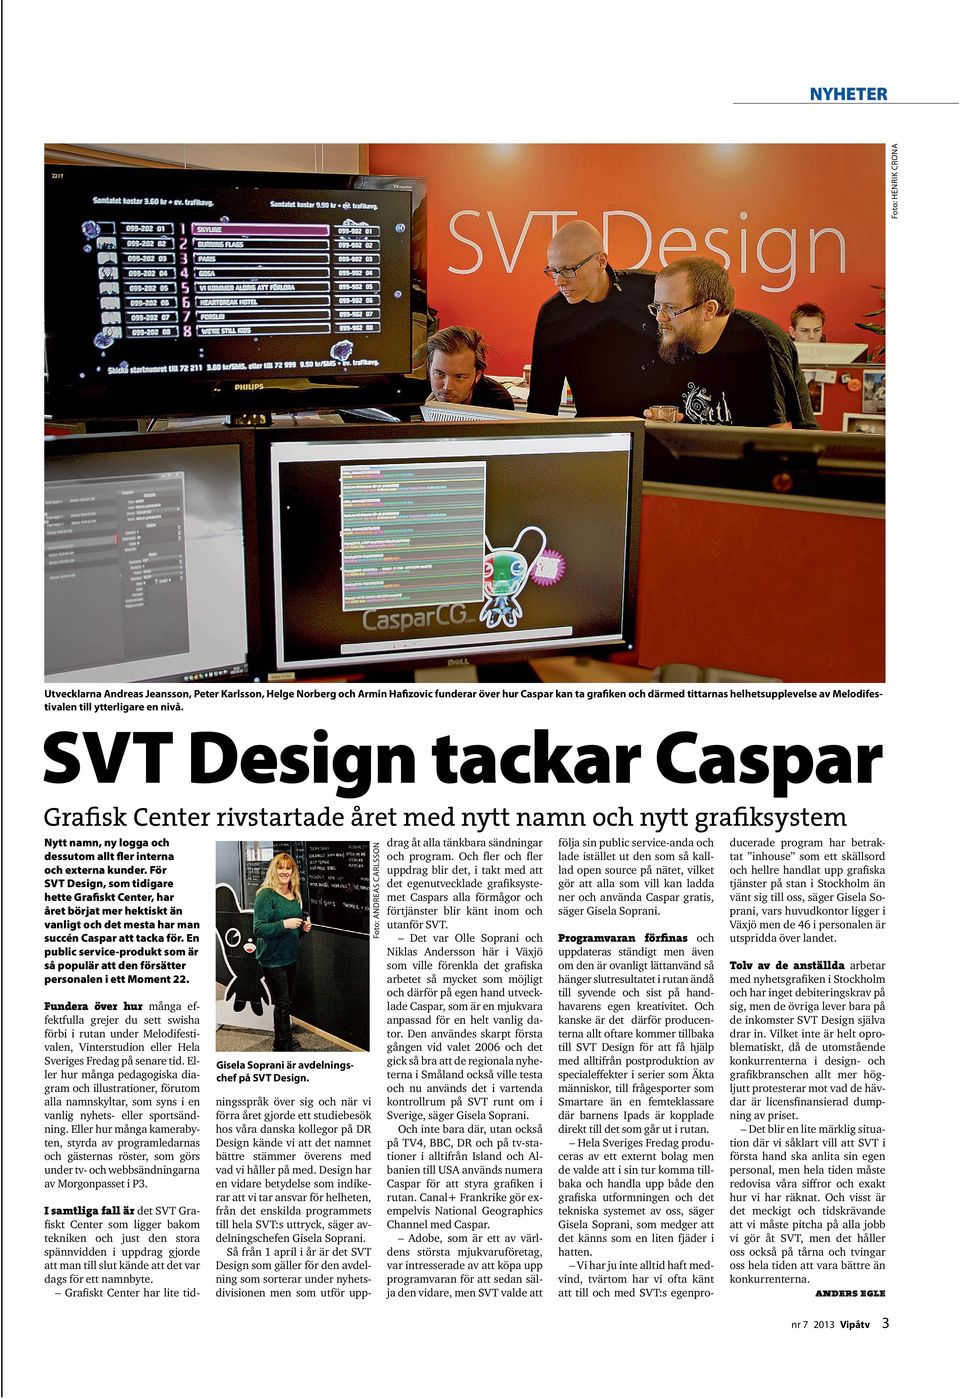 SVT Design tackar Caspar Grafisk Center rivstartade året med nytt namn och nytt grafiksystem Nytt namn, ny logga och dessutom allt fler interna och externa kunder.